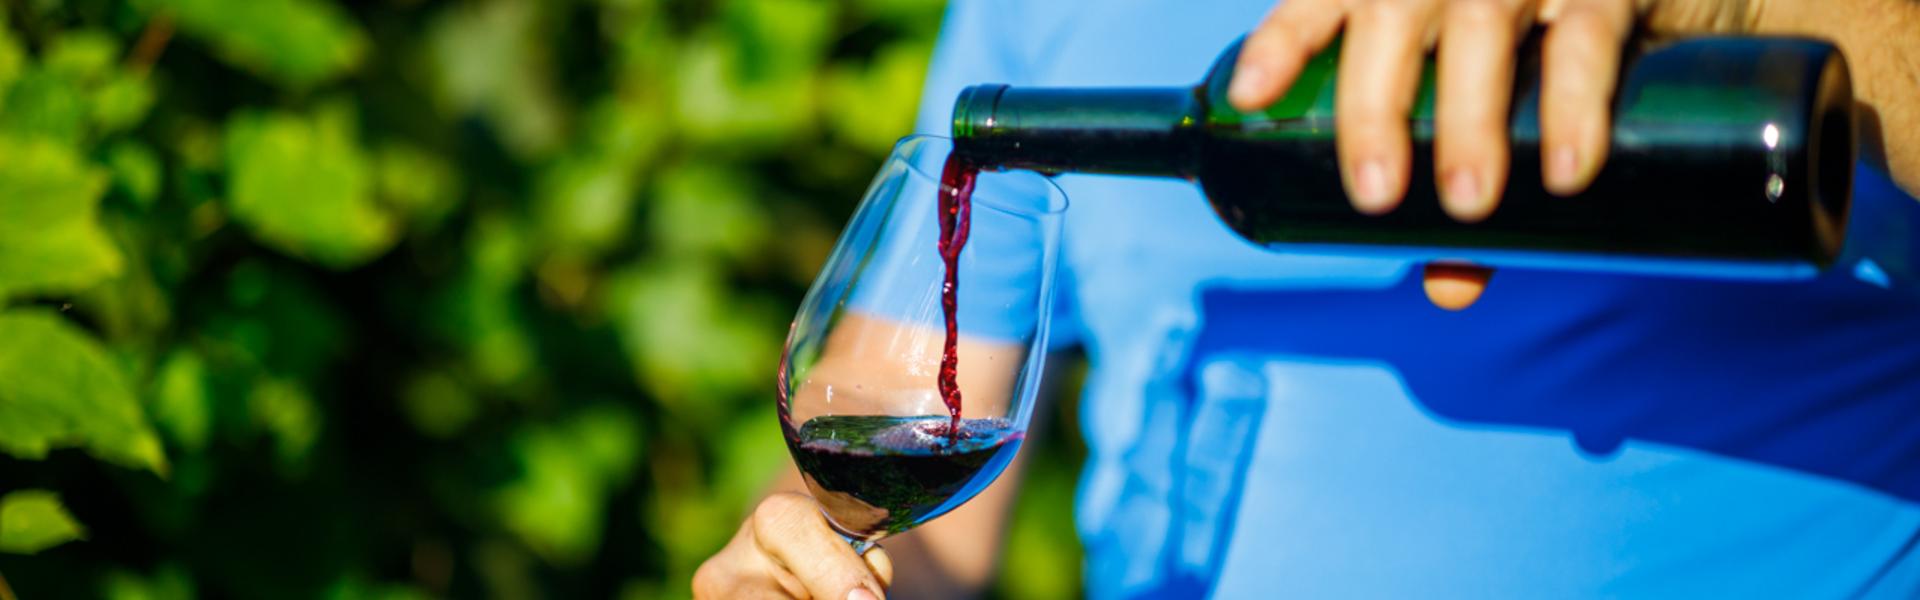 Homme versant du vin dans un verre devant une vigne